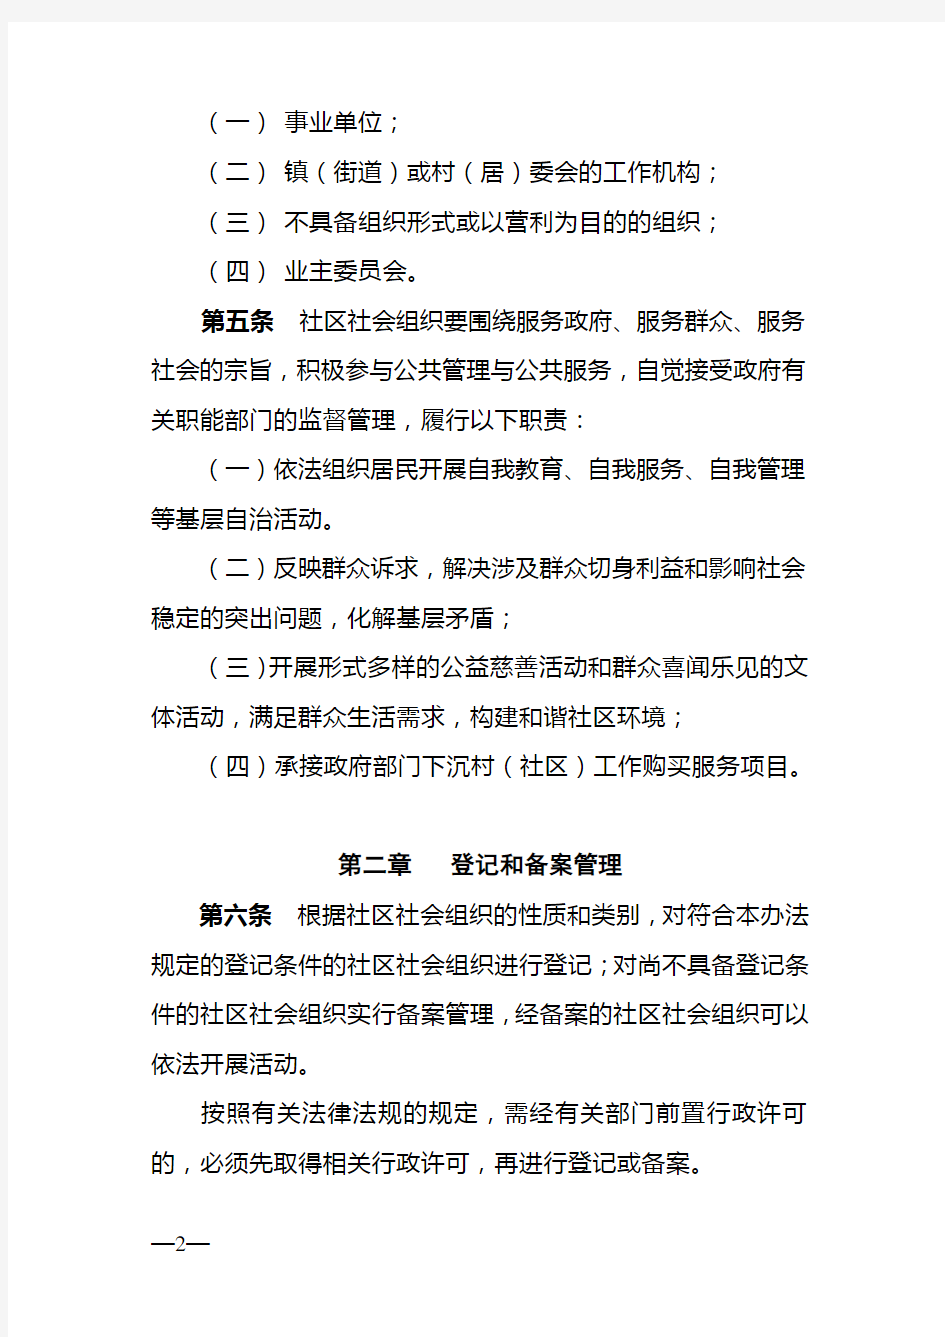 东莞市社区社会组织登记备案管理暂行办法